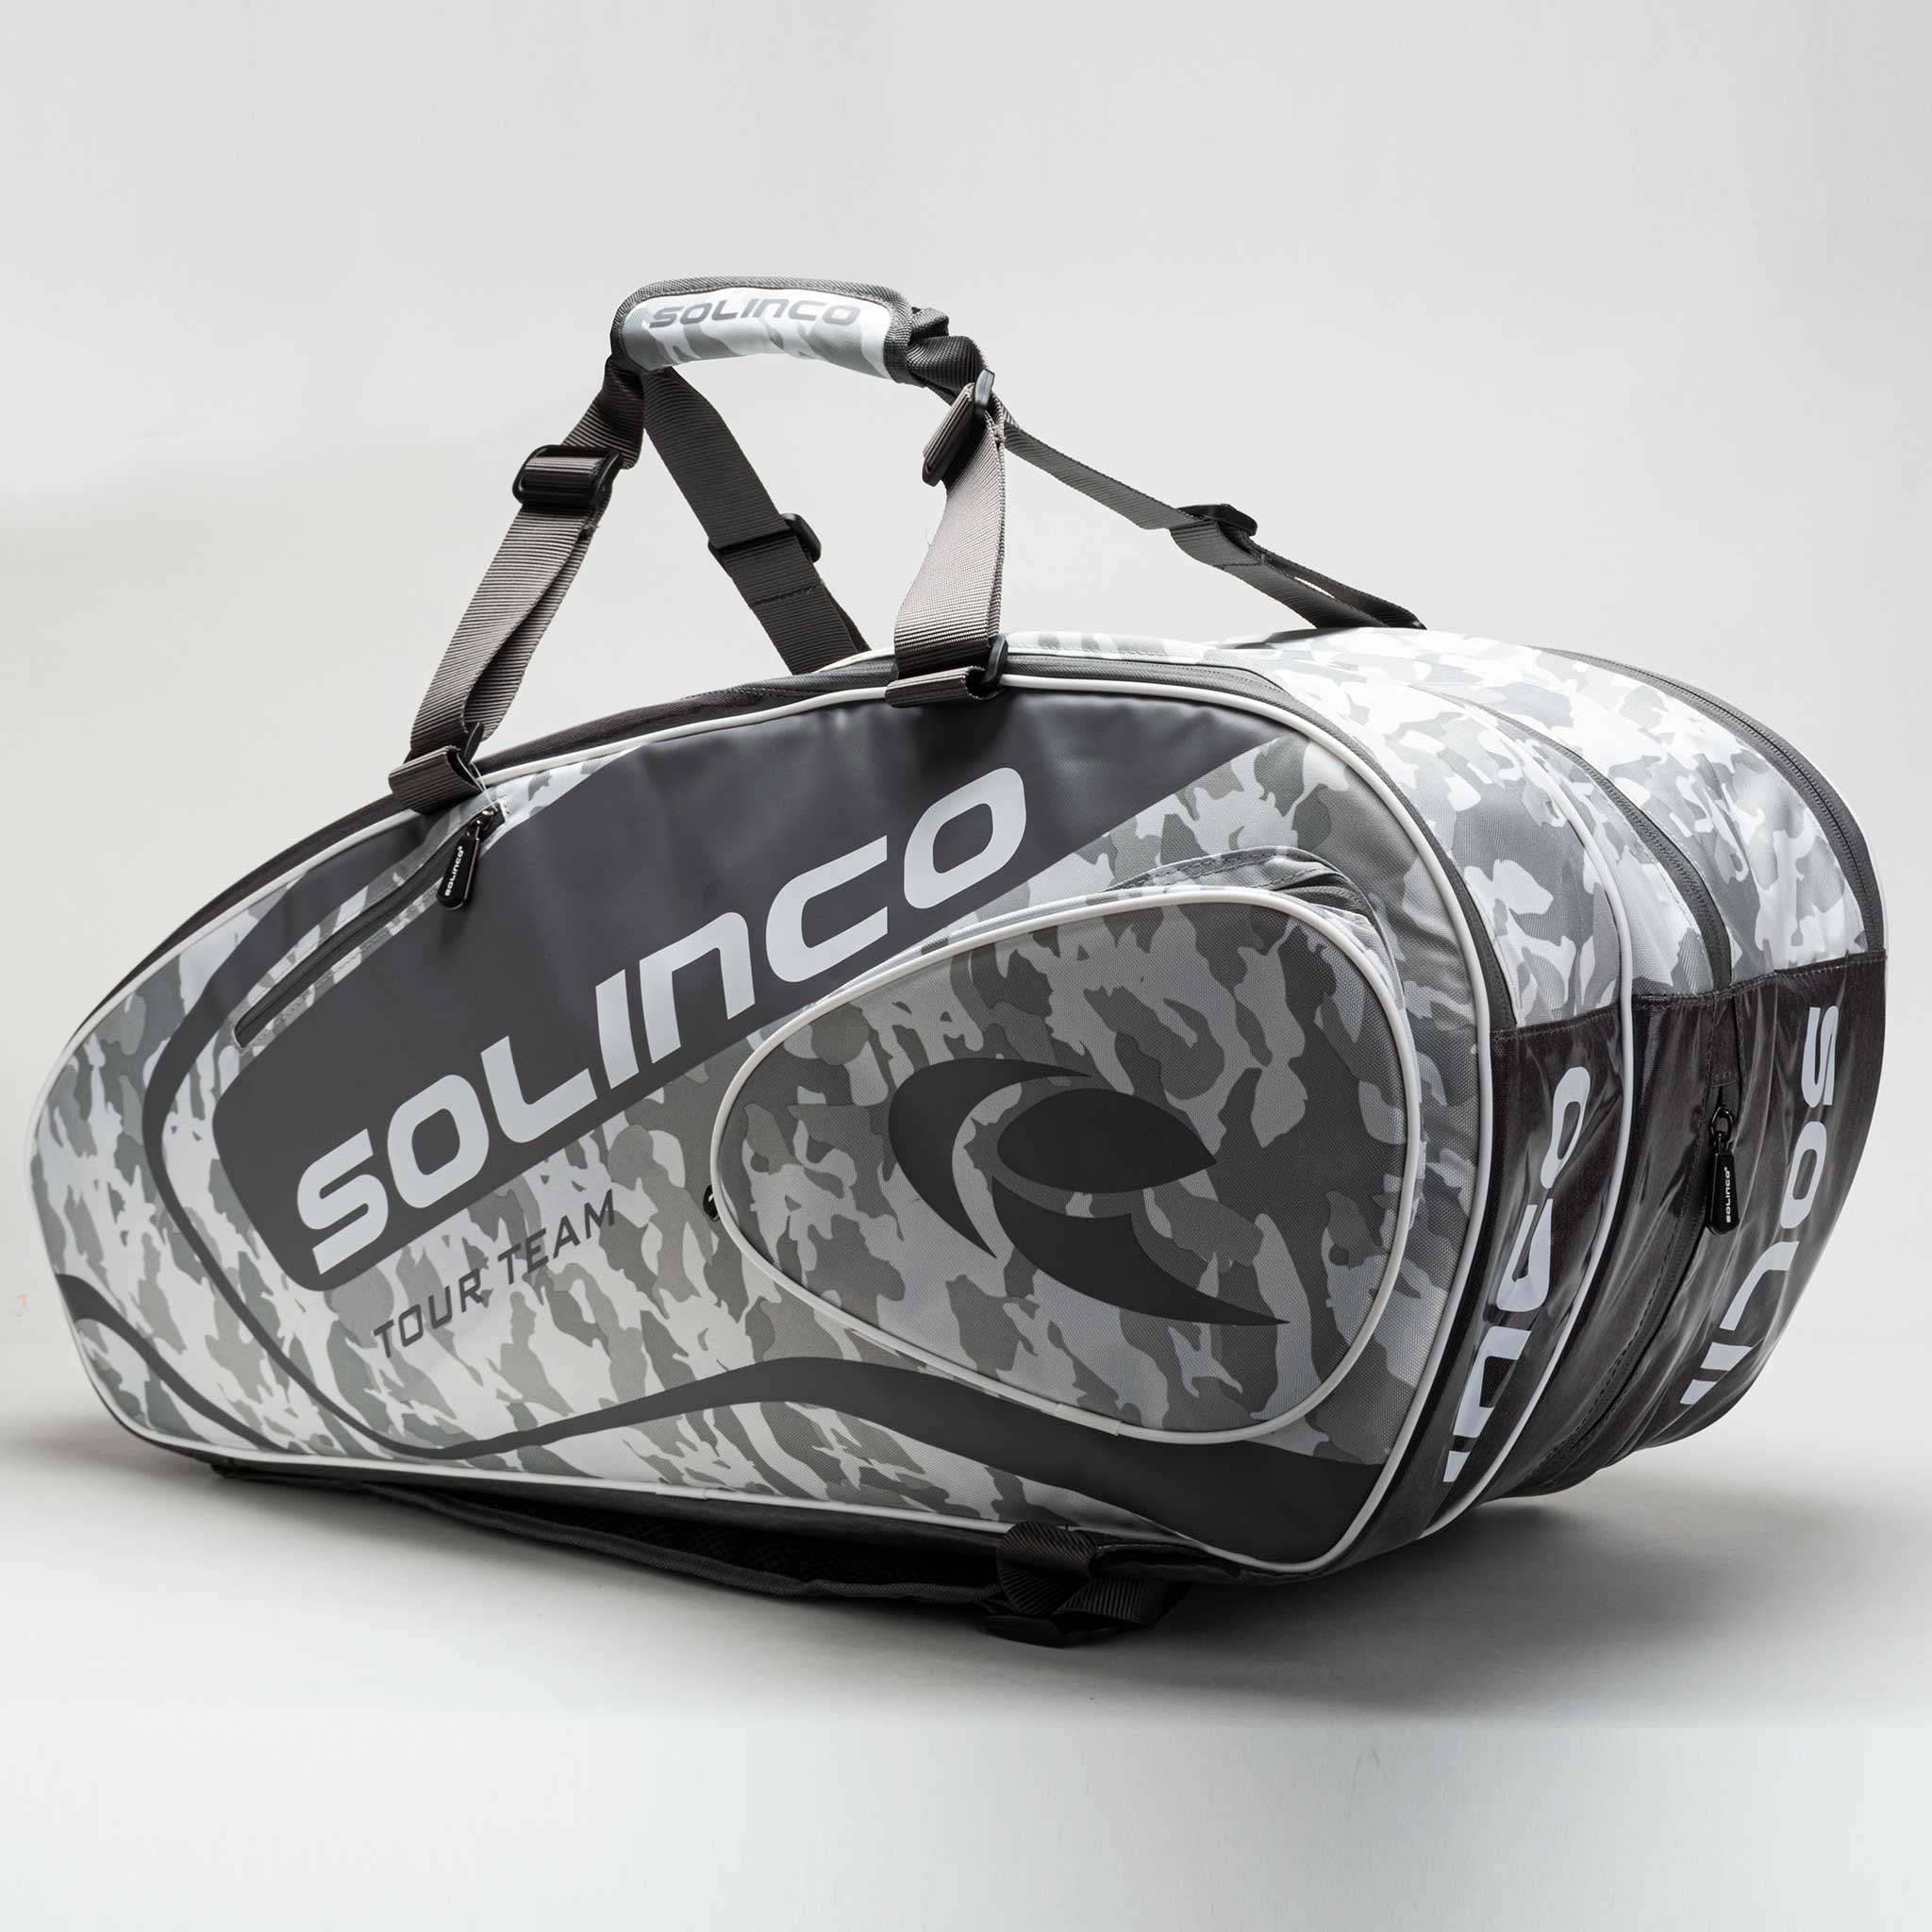 Solinco Tour 15 Pack Bag White Camo